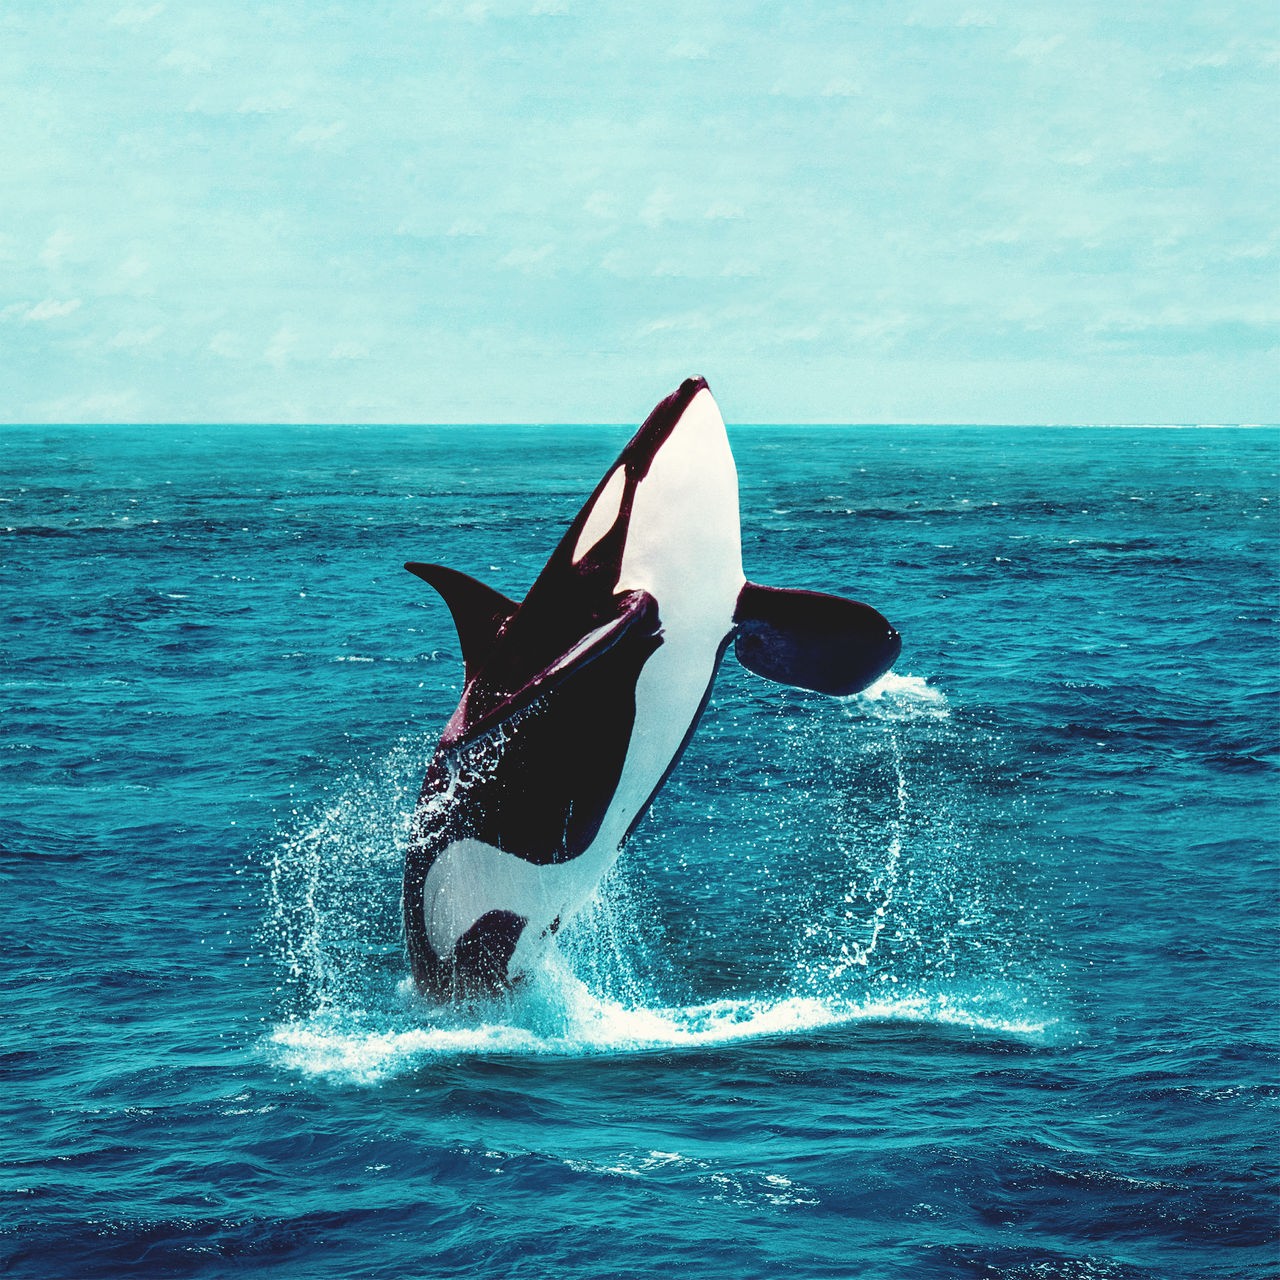 Tiere im Film | Von Weißen Haien, Orcas und Affen im Kino